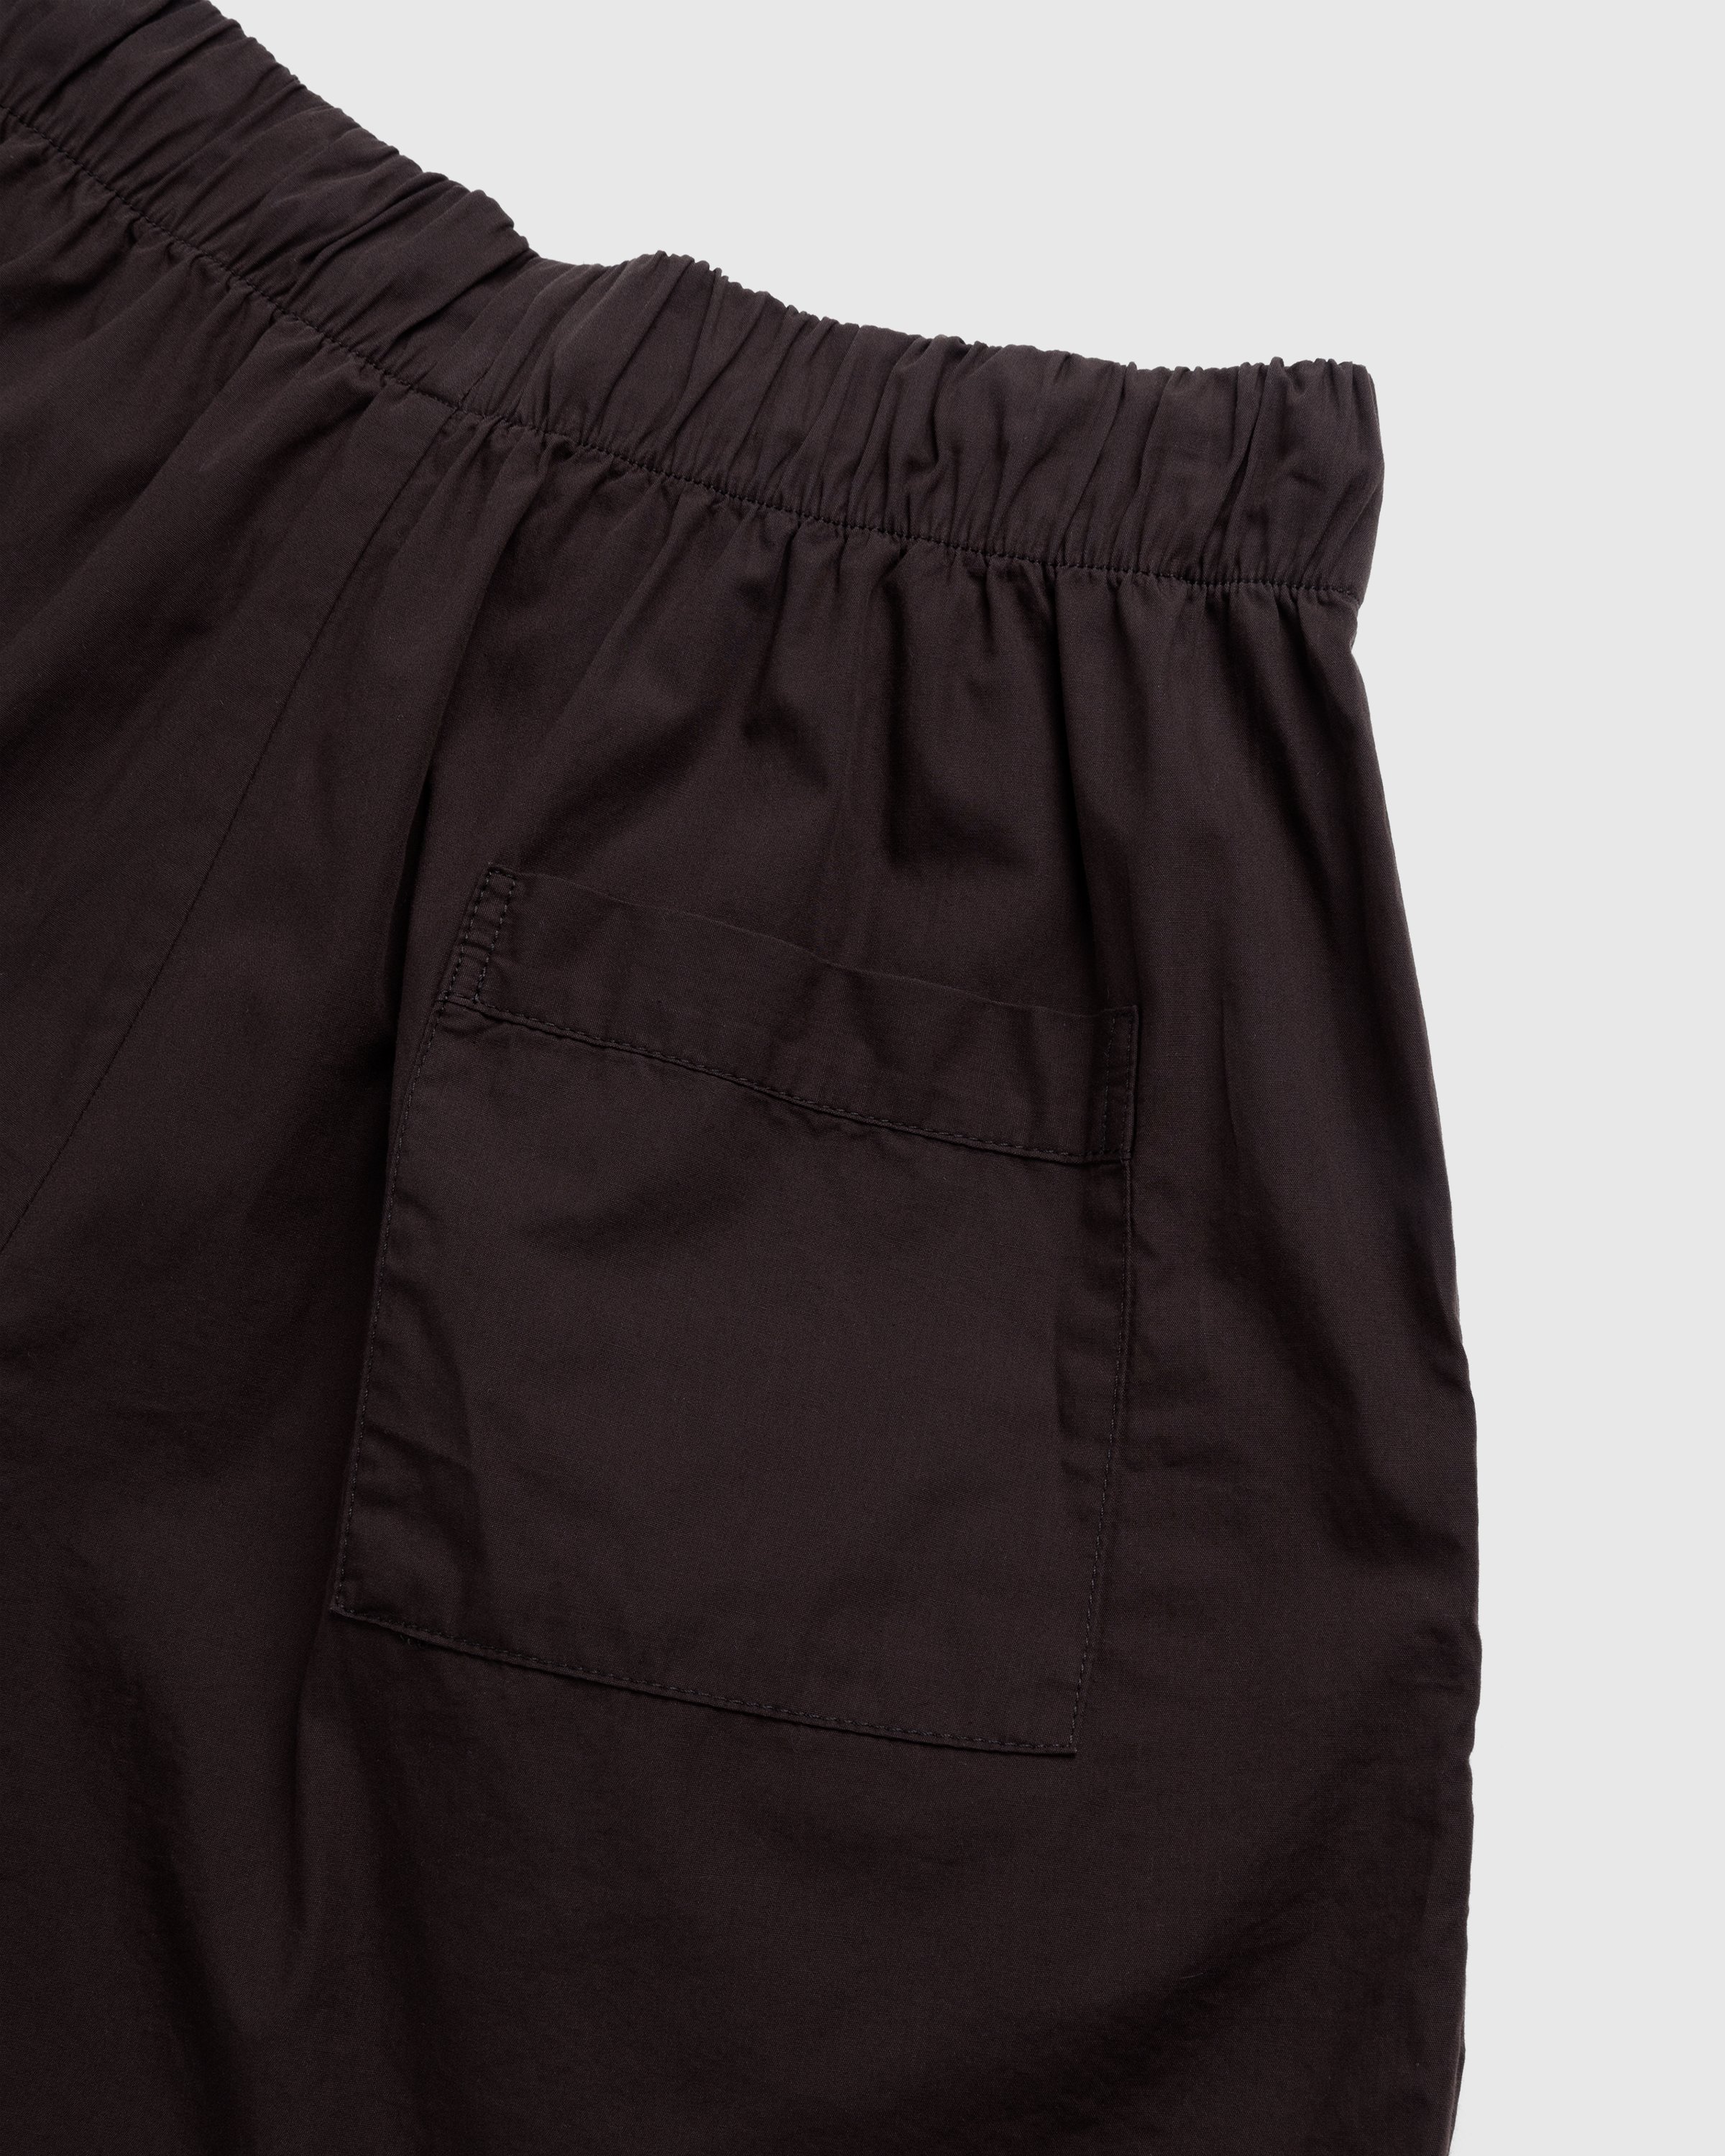 Tekla - Cotton Poplin Pyjamas Shorts Coffee - Clothing - Brown - Image 4